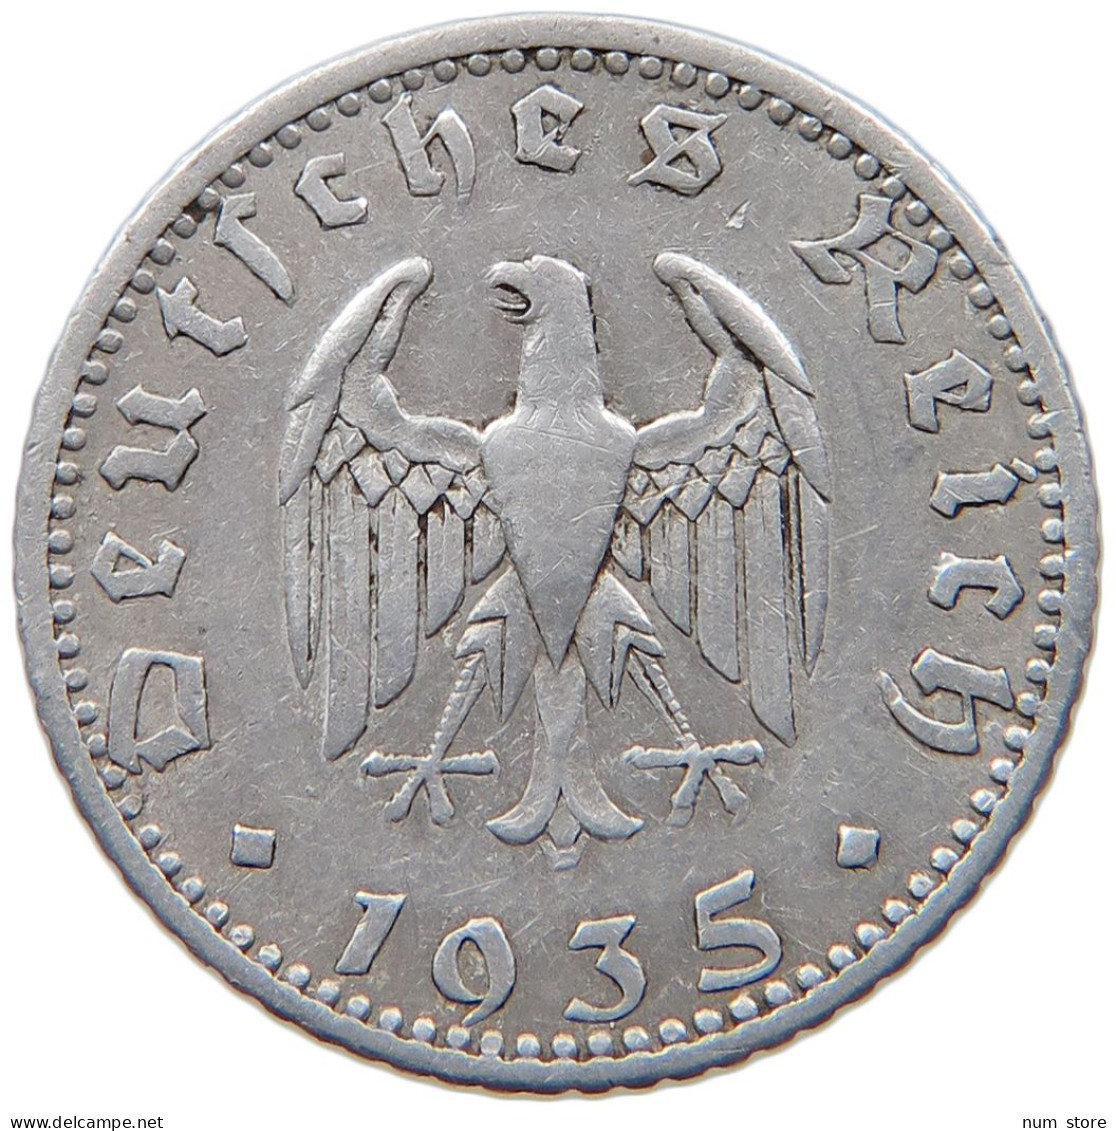 GERMANY 50 REICHSPFENNIG 1935 A #s095 0209 - 50 Reichspfennig